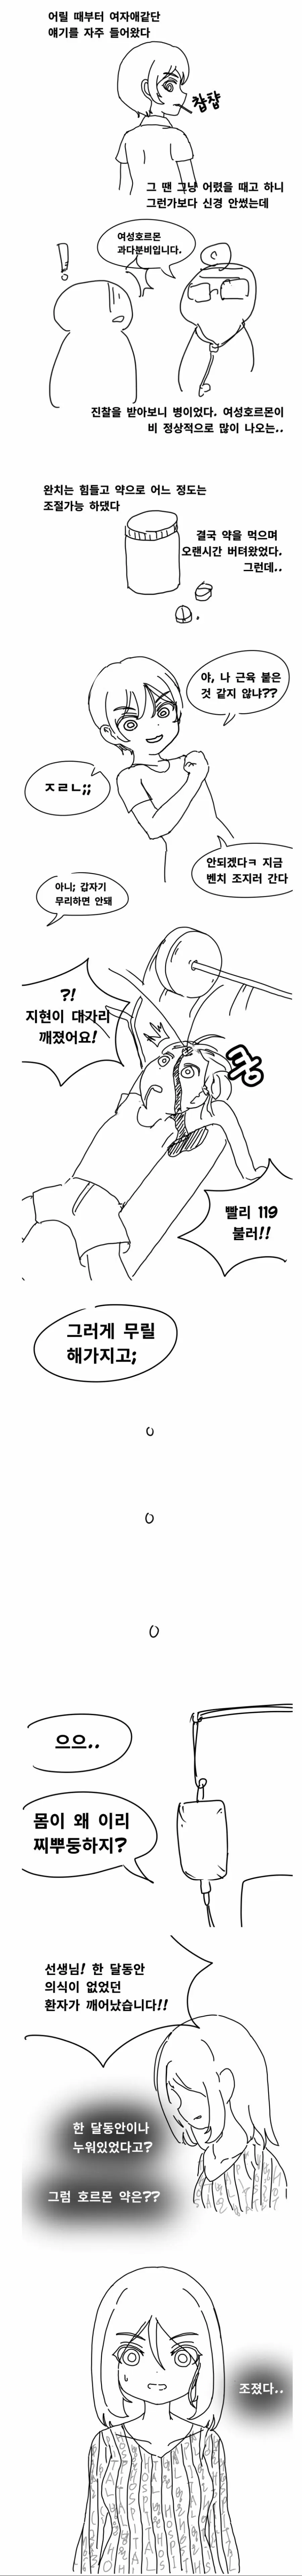 여성 호르몬이 많이 나오는 만화.manhwa | mbong.kr 엠봉